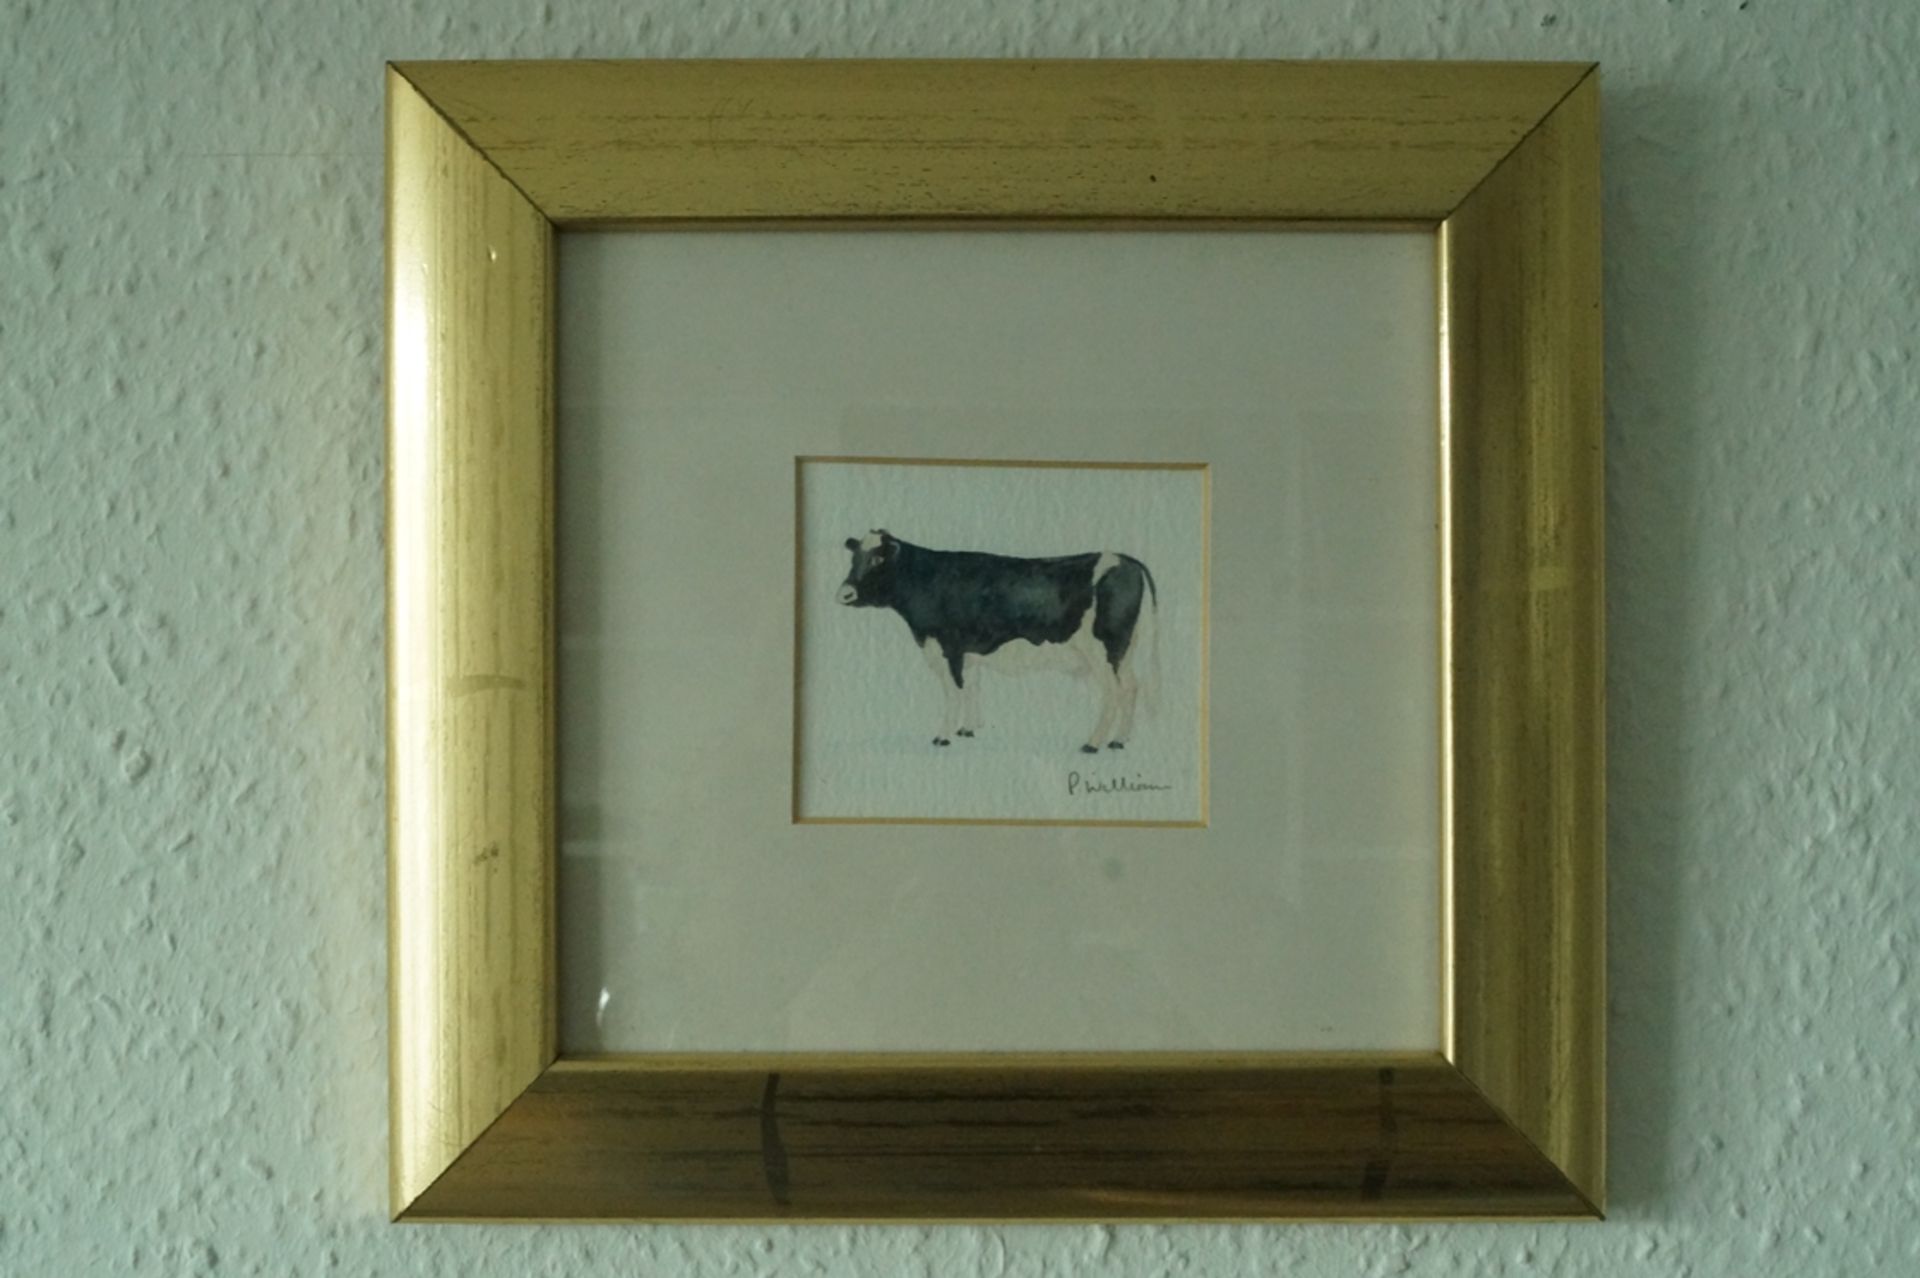 3er Reihe moderner Bilder mit Tiermotiven; Darstellung von Kuh, Schwein und Schafbock in Aquarellte - Image 5 of 5